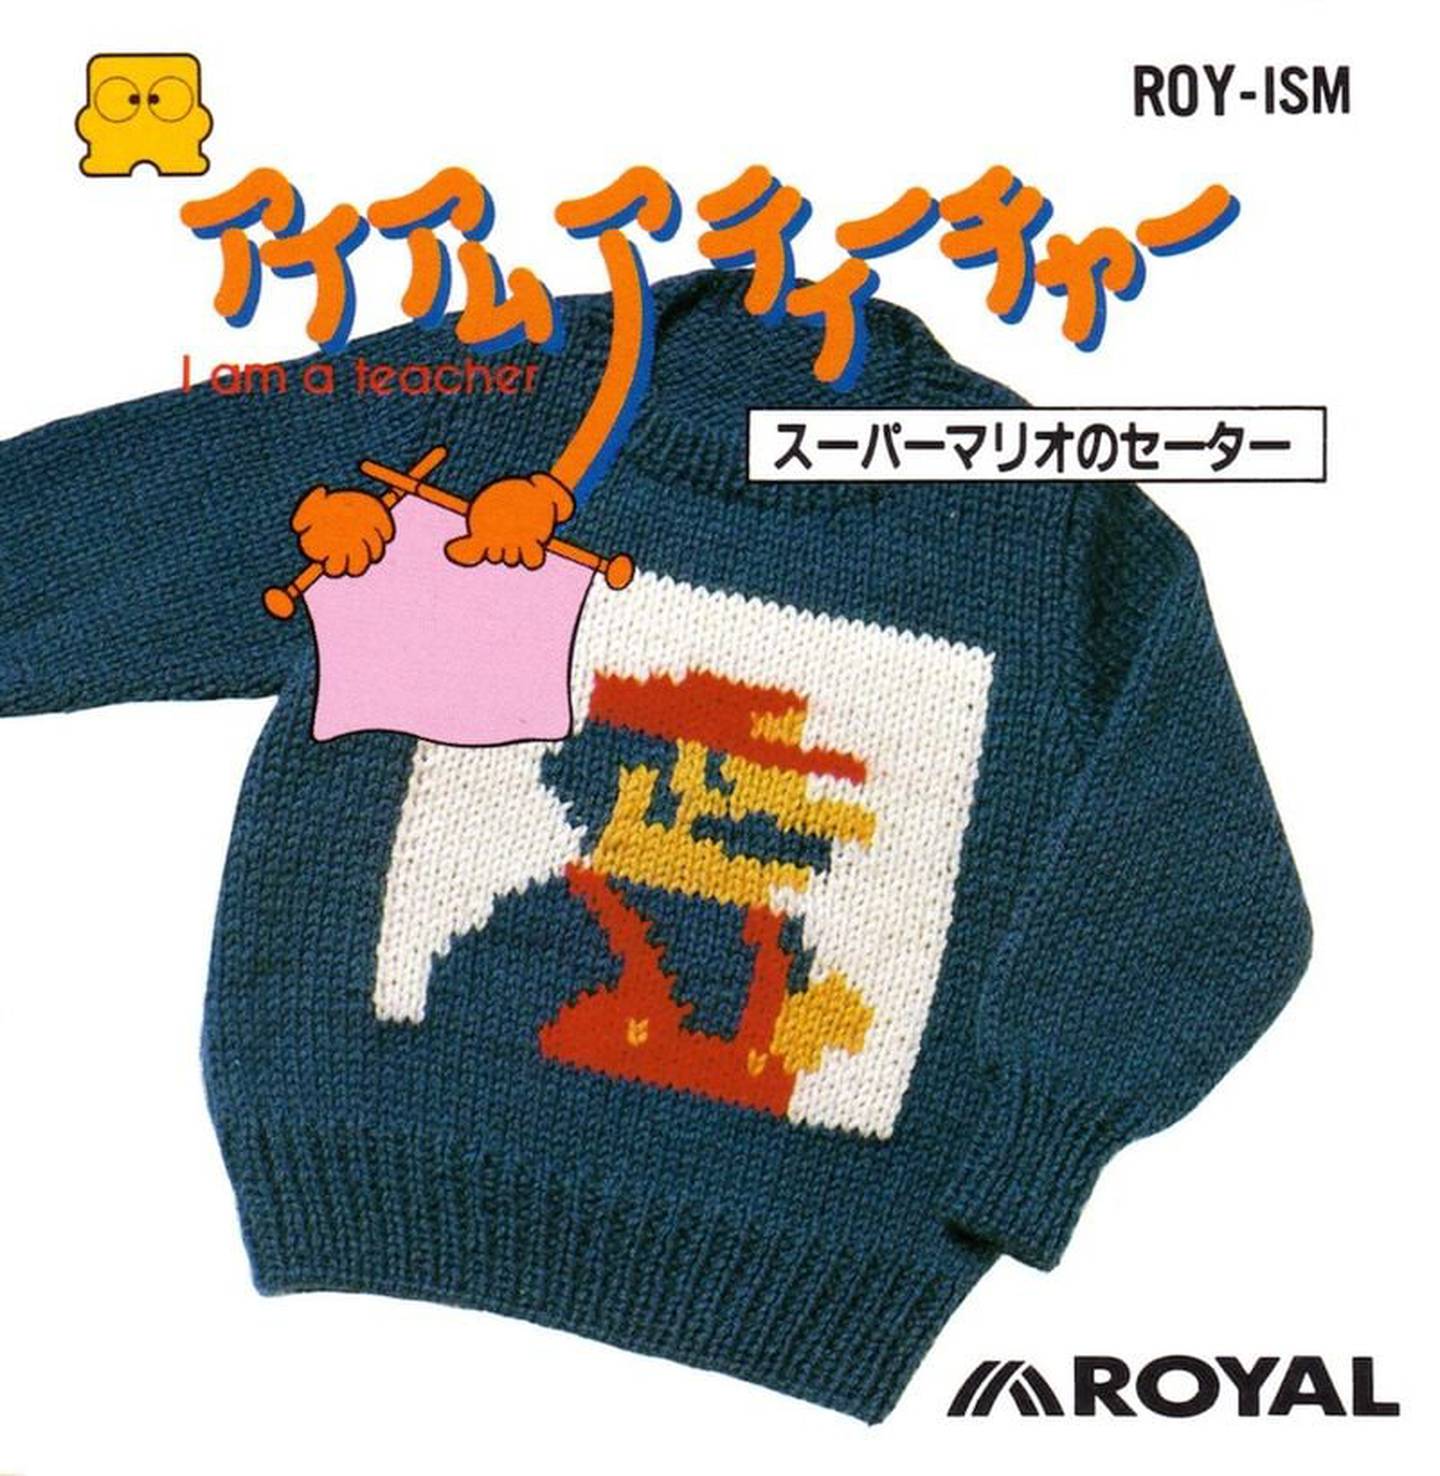 ¿Tiene frío? ¿Qué tal le suena una sweater tejida por Mario? Foto de Royal Kougyou.